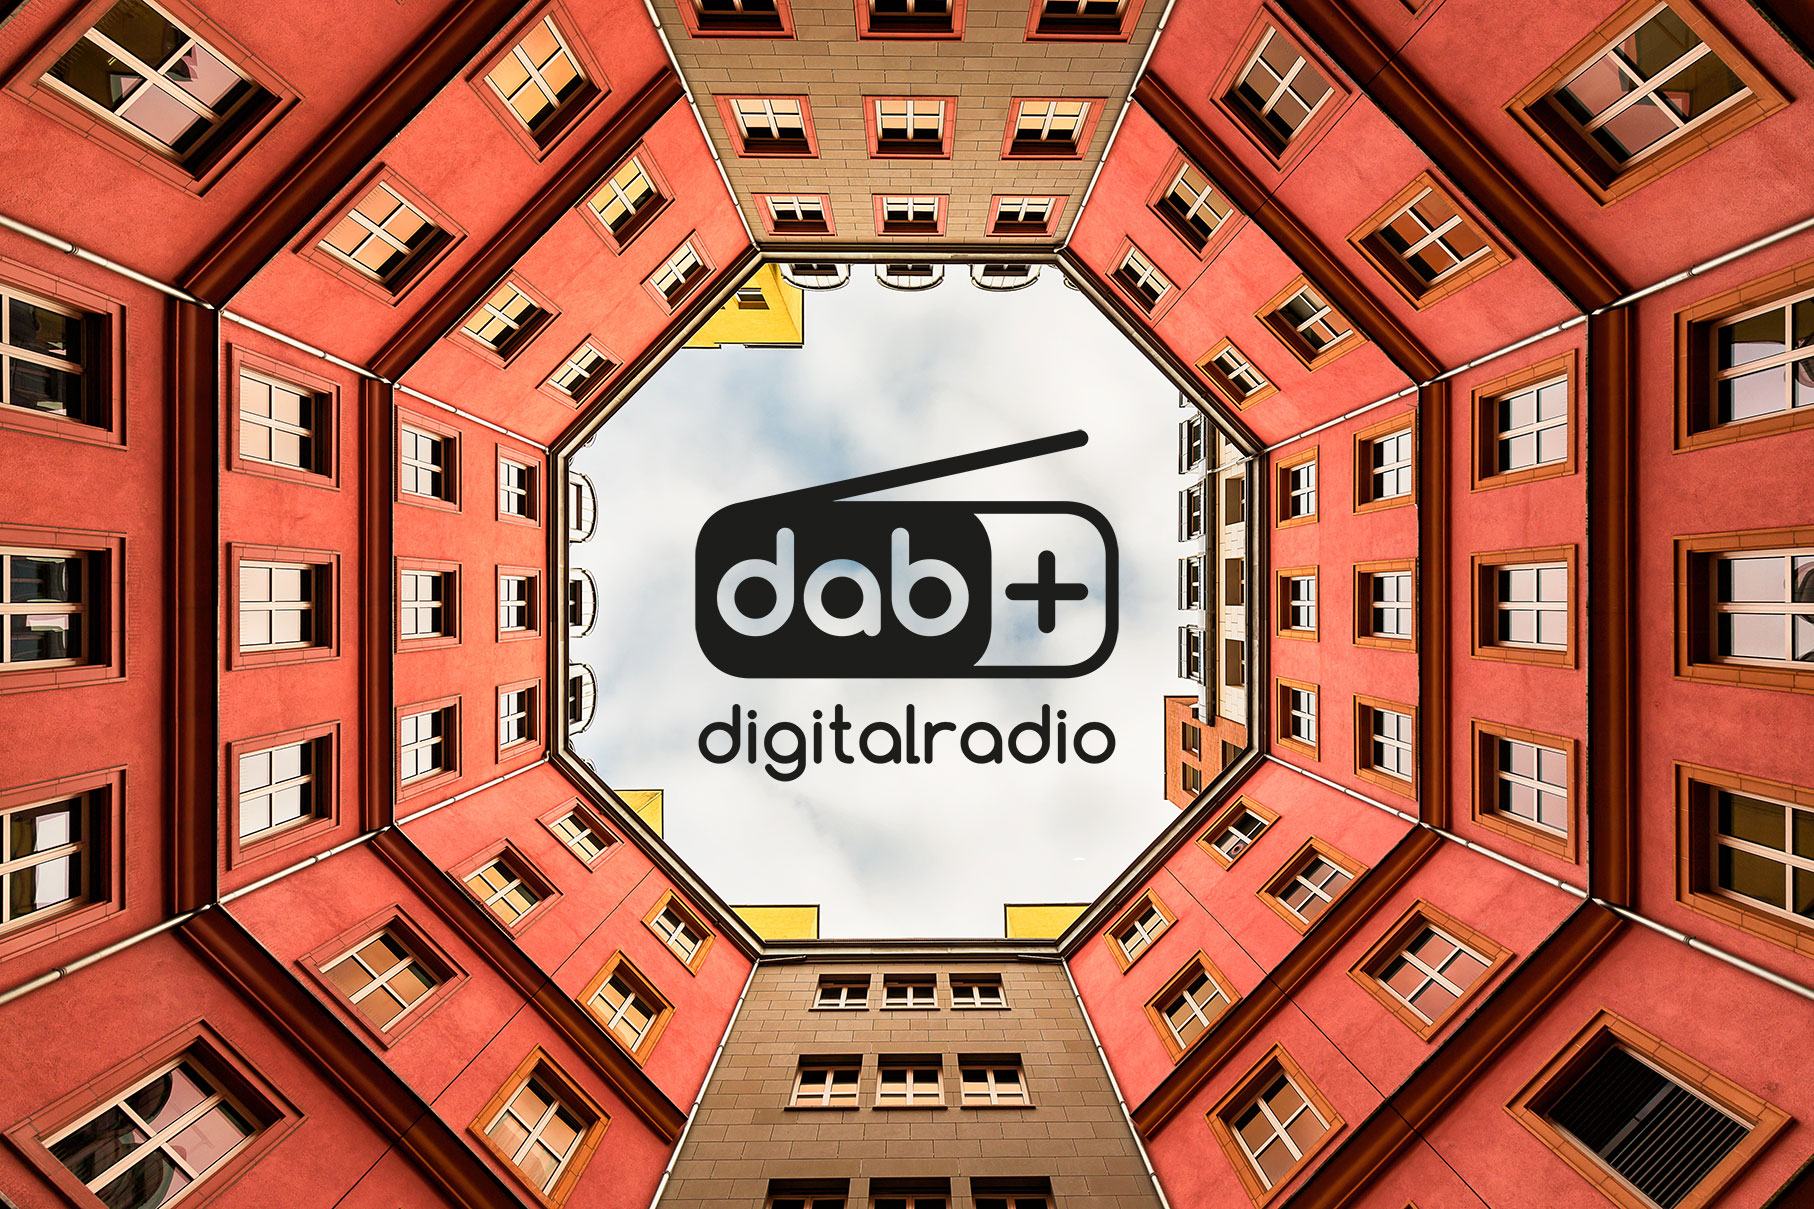 DAB Italia migliora la copertura DAB+ nel Veneto e Friuli Venezia Giulia